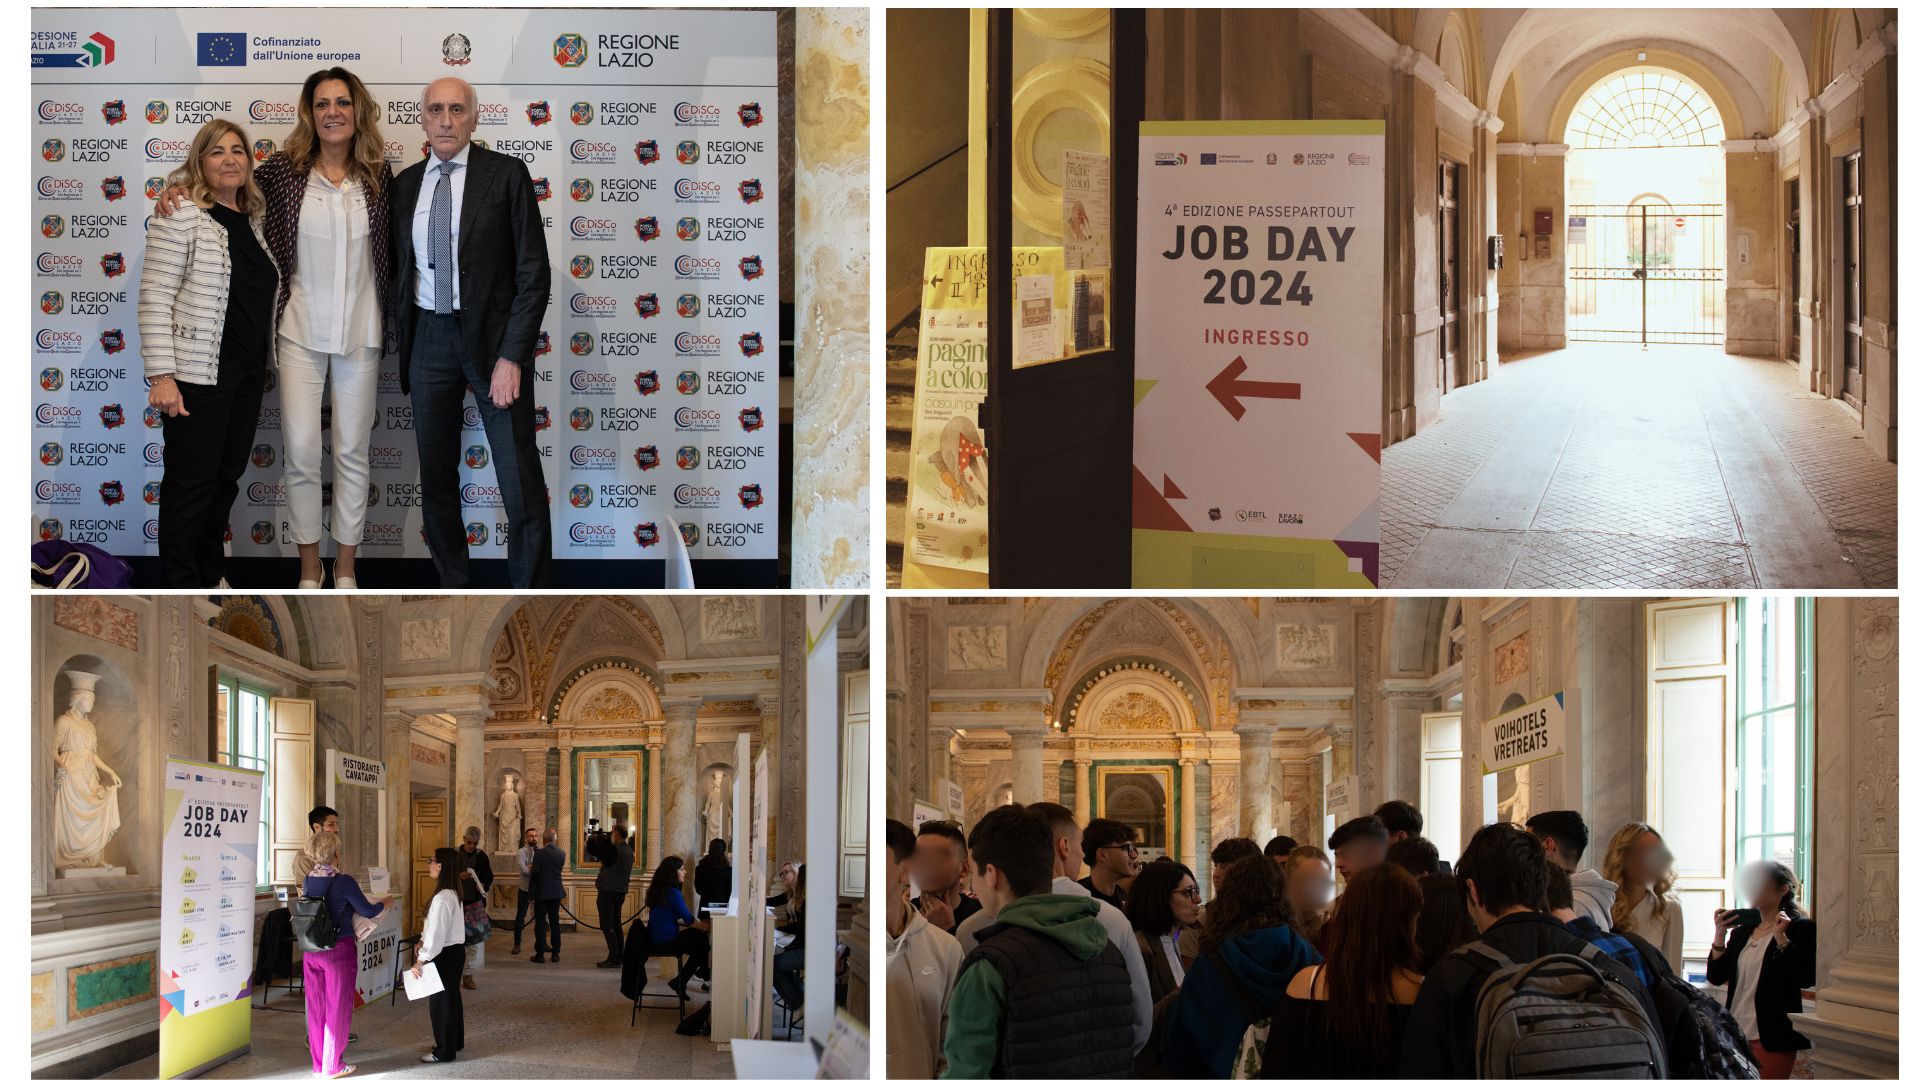 Quinto appuntamento con il Job Day “Passepartout” a Tarquinia. Iniziativa, organizzata da Regione Lazio con la sua rete dei Centri per l’Impiego – Spazio Lavoro, DiSCo con il progetto Porta Futuro Lazio e l’Ente Bilaterale Turismo del Lazio